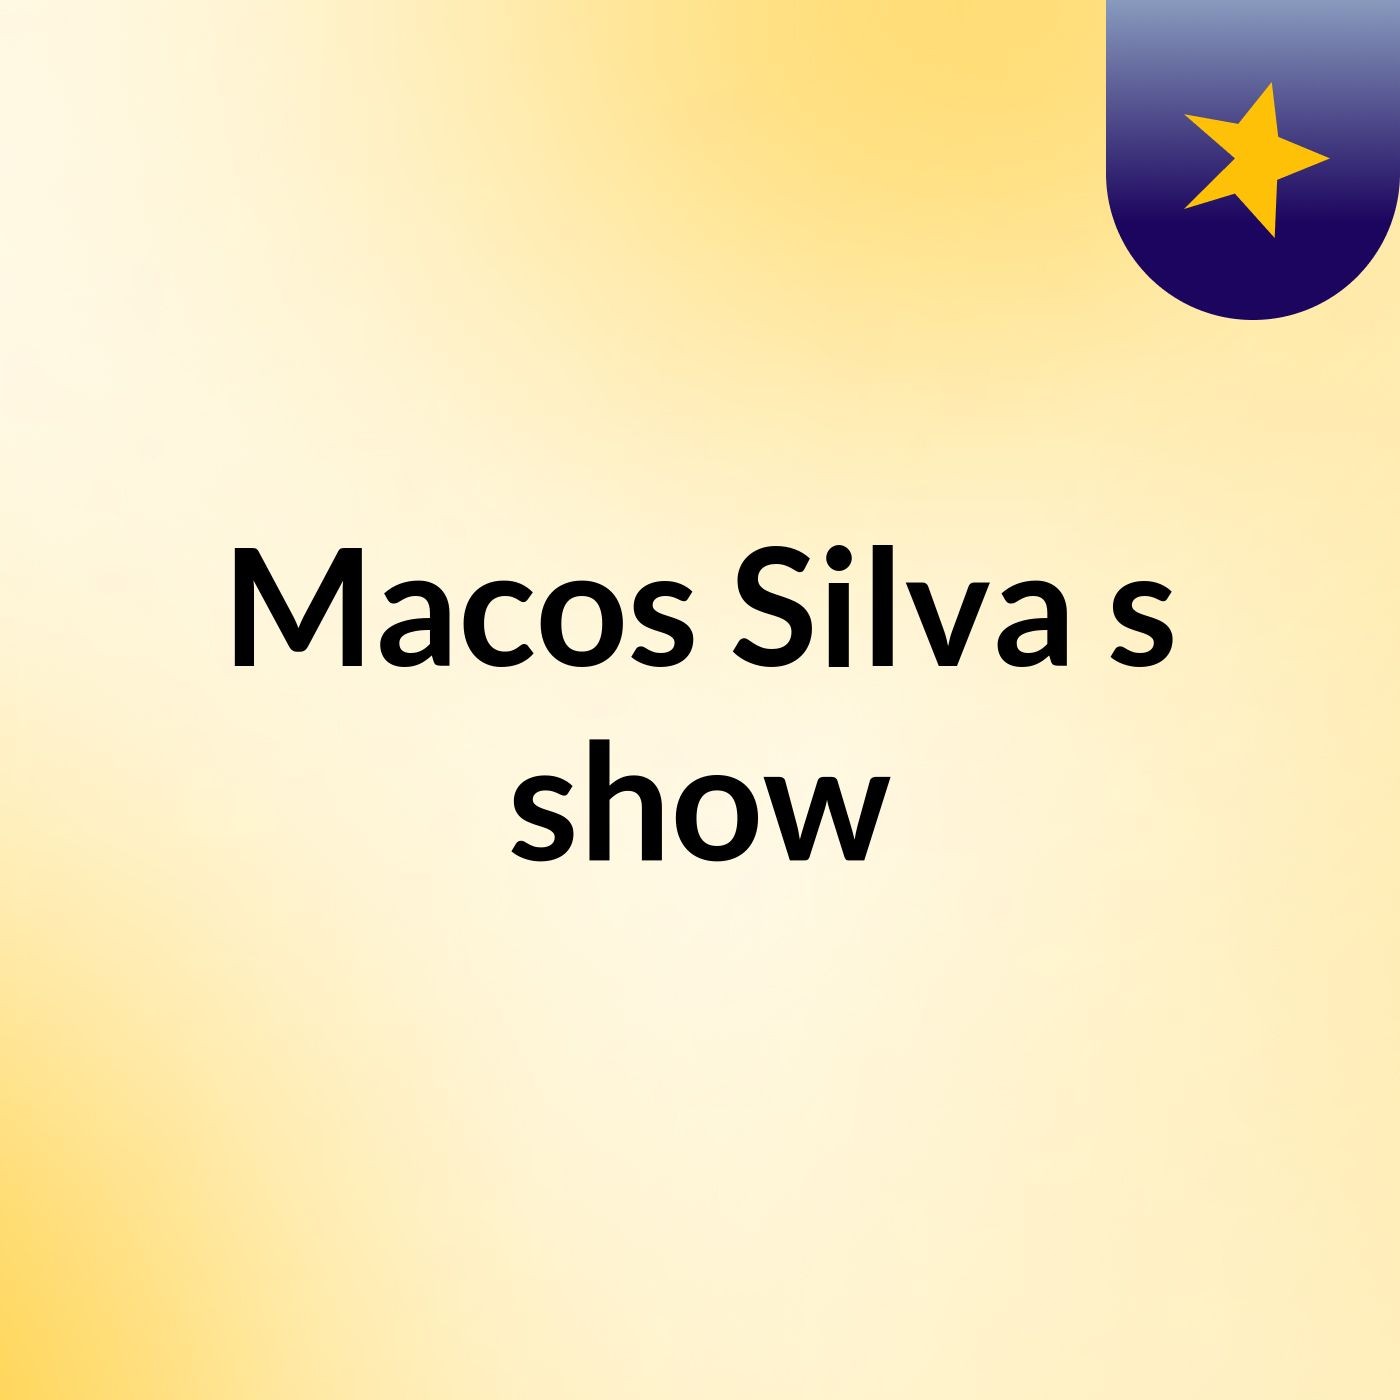 Macos Silva's show